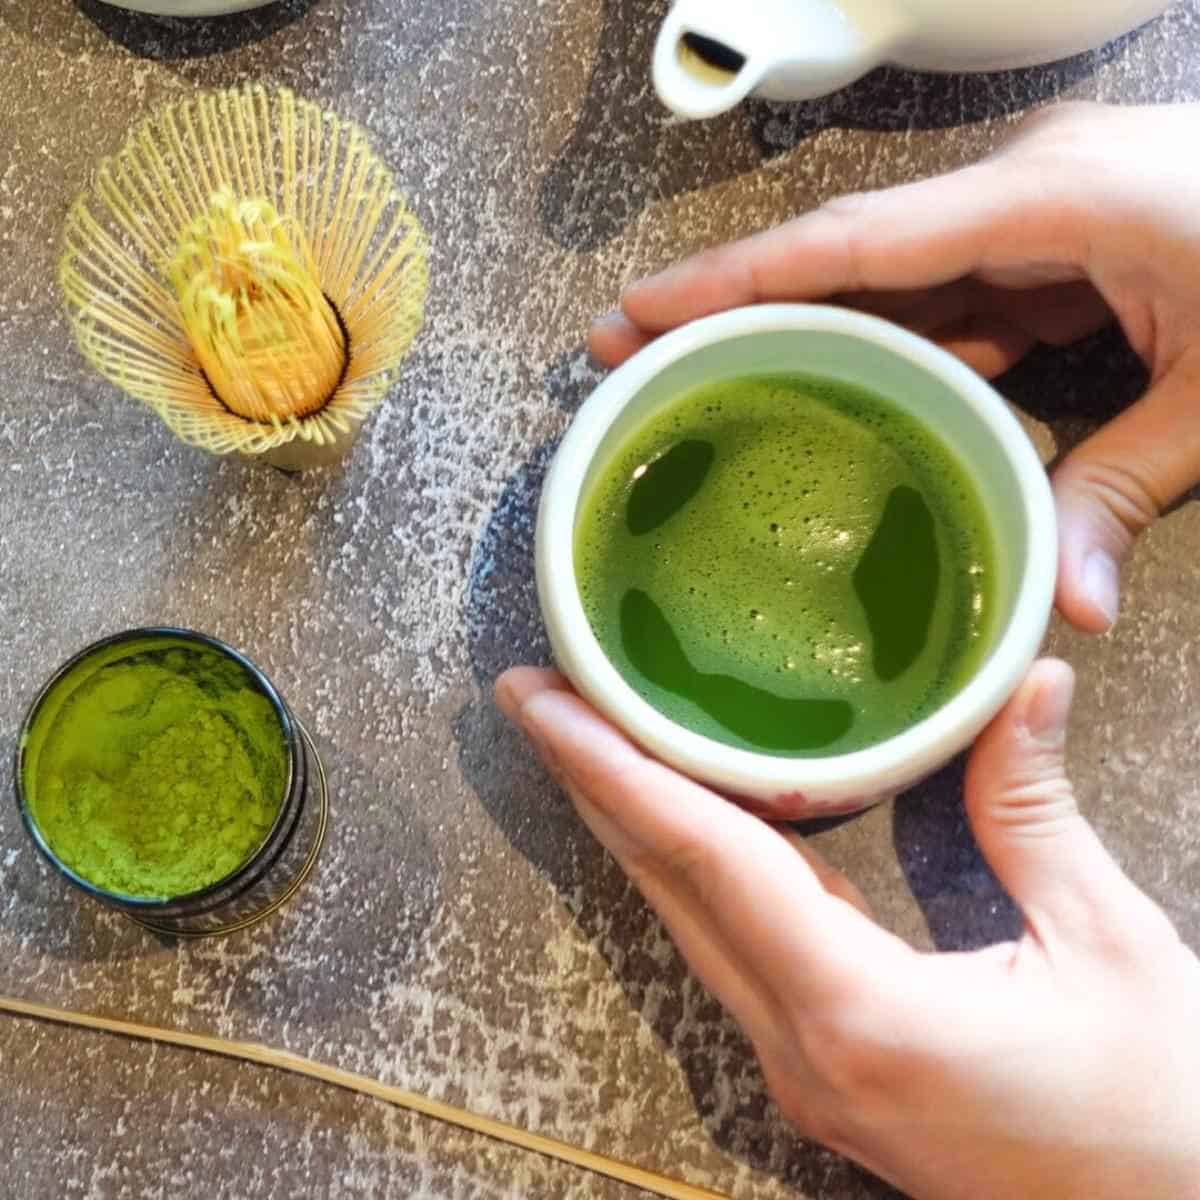 How to make matcha green tea